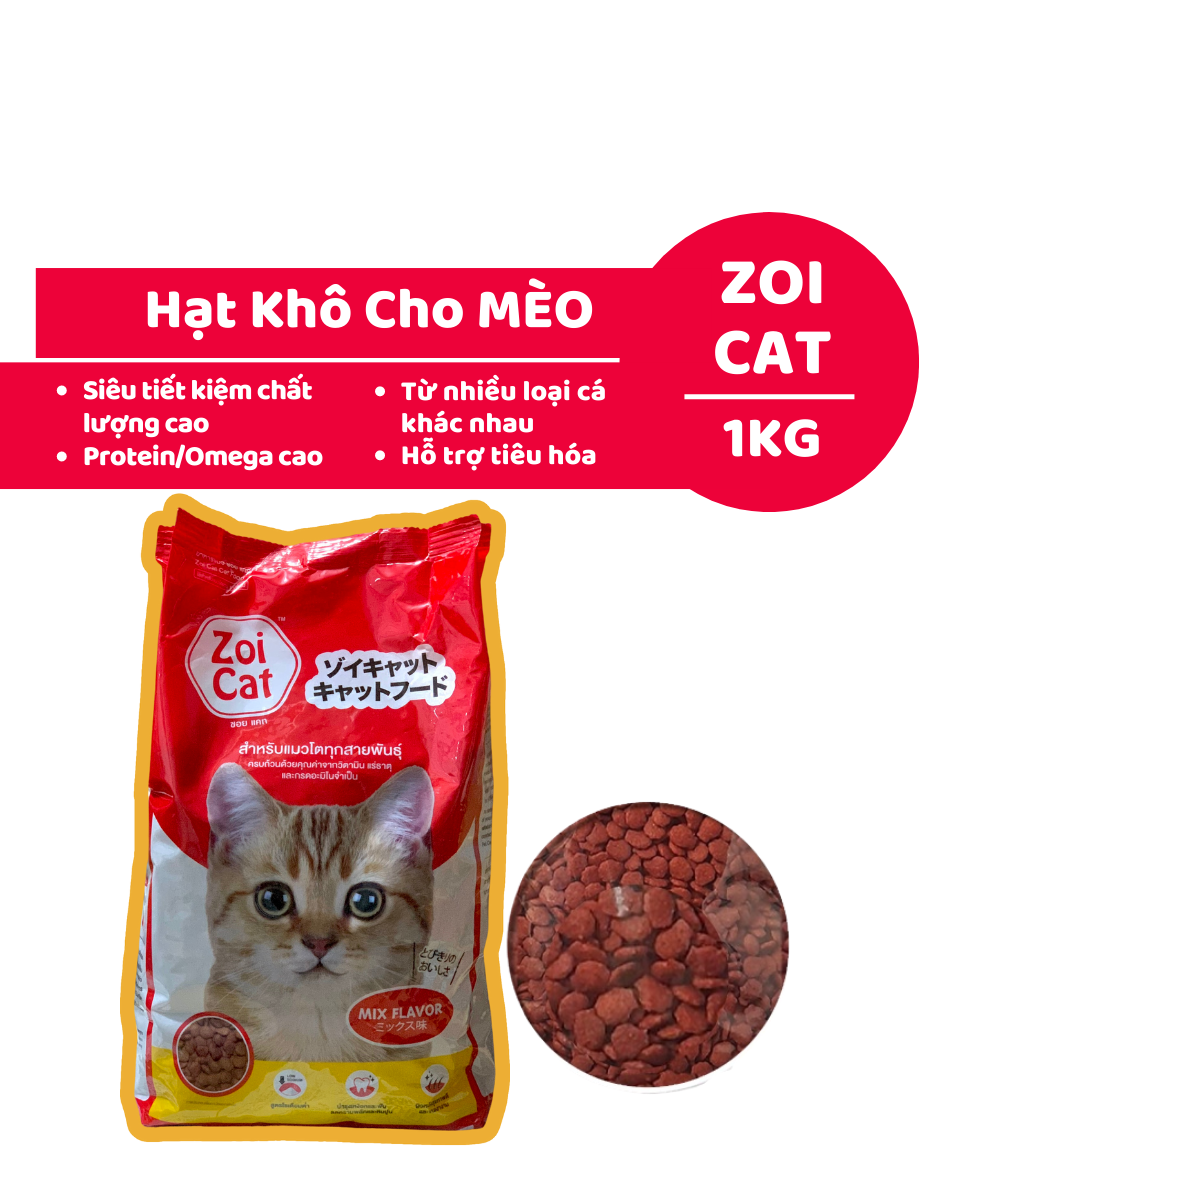 Hạt Mèo ZOI CAT 1kg Thức Ăn Cho Mèo Giá Rẻ